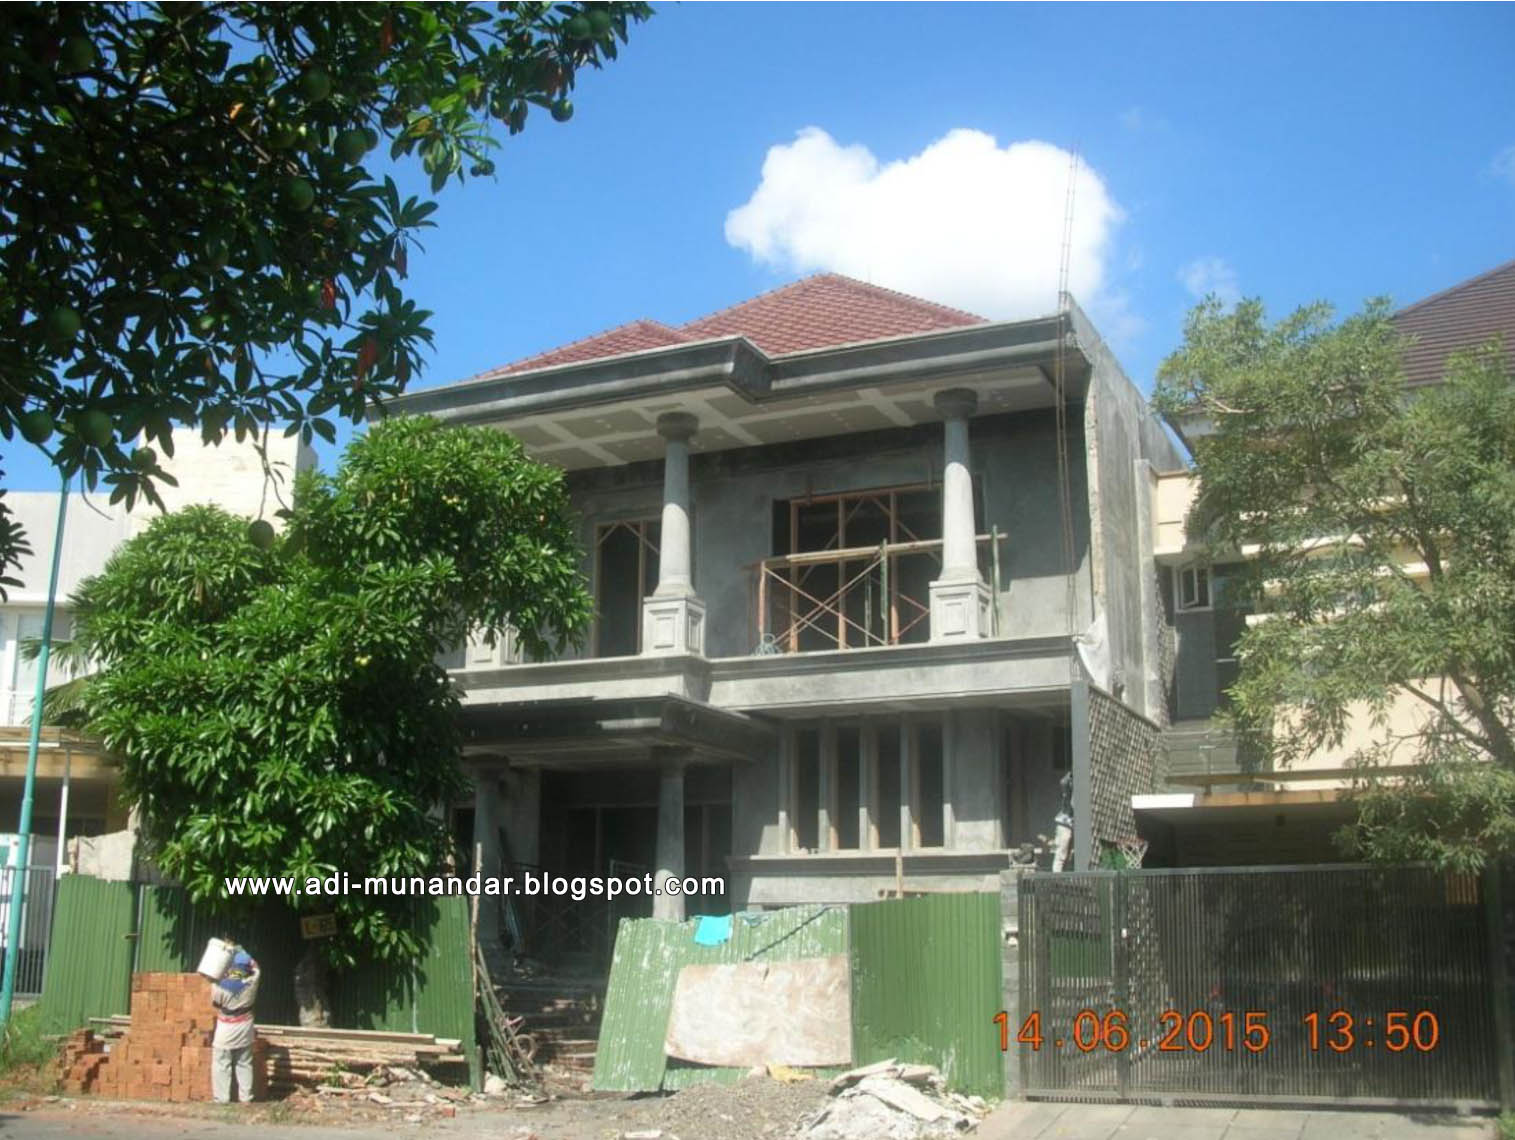 Arsitektur Rumah Konsep Klasik Moderen di Surabaya